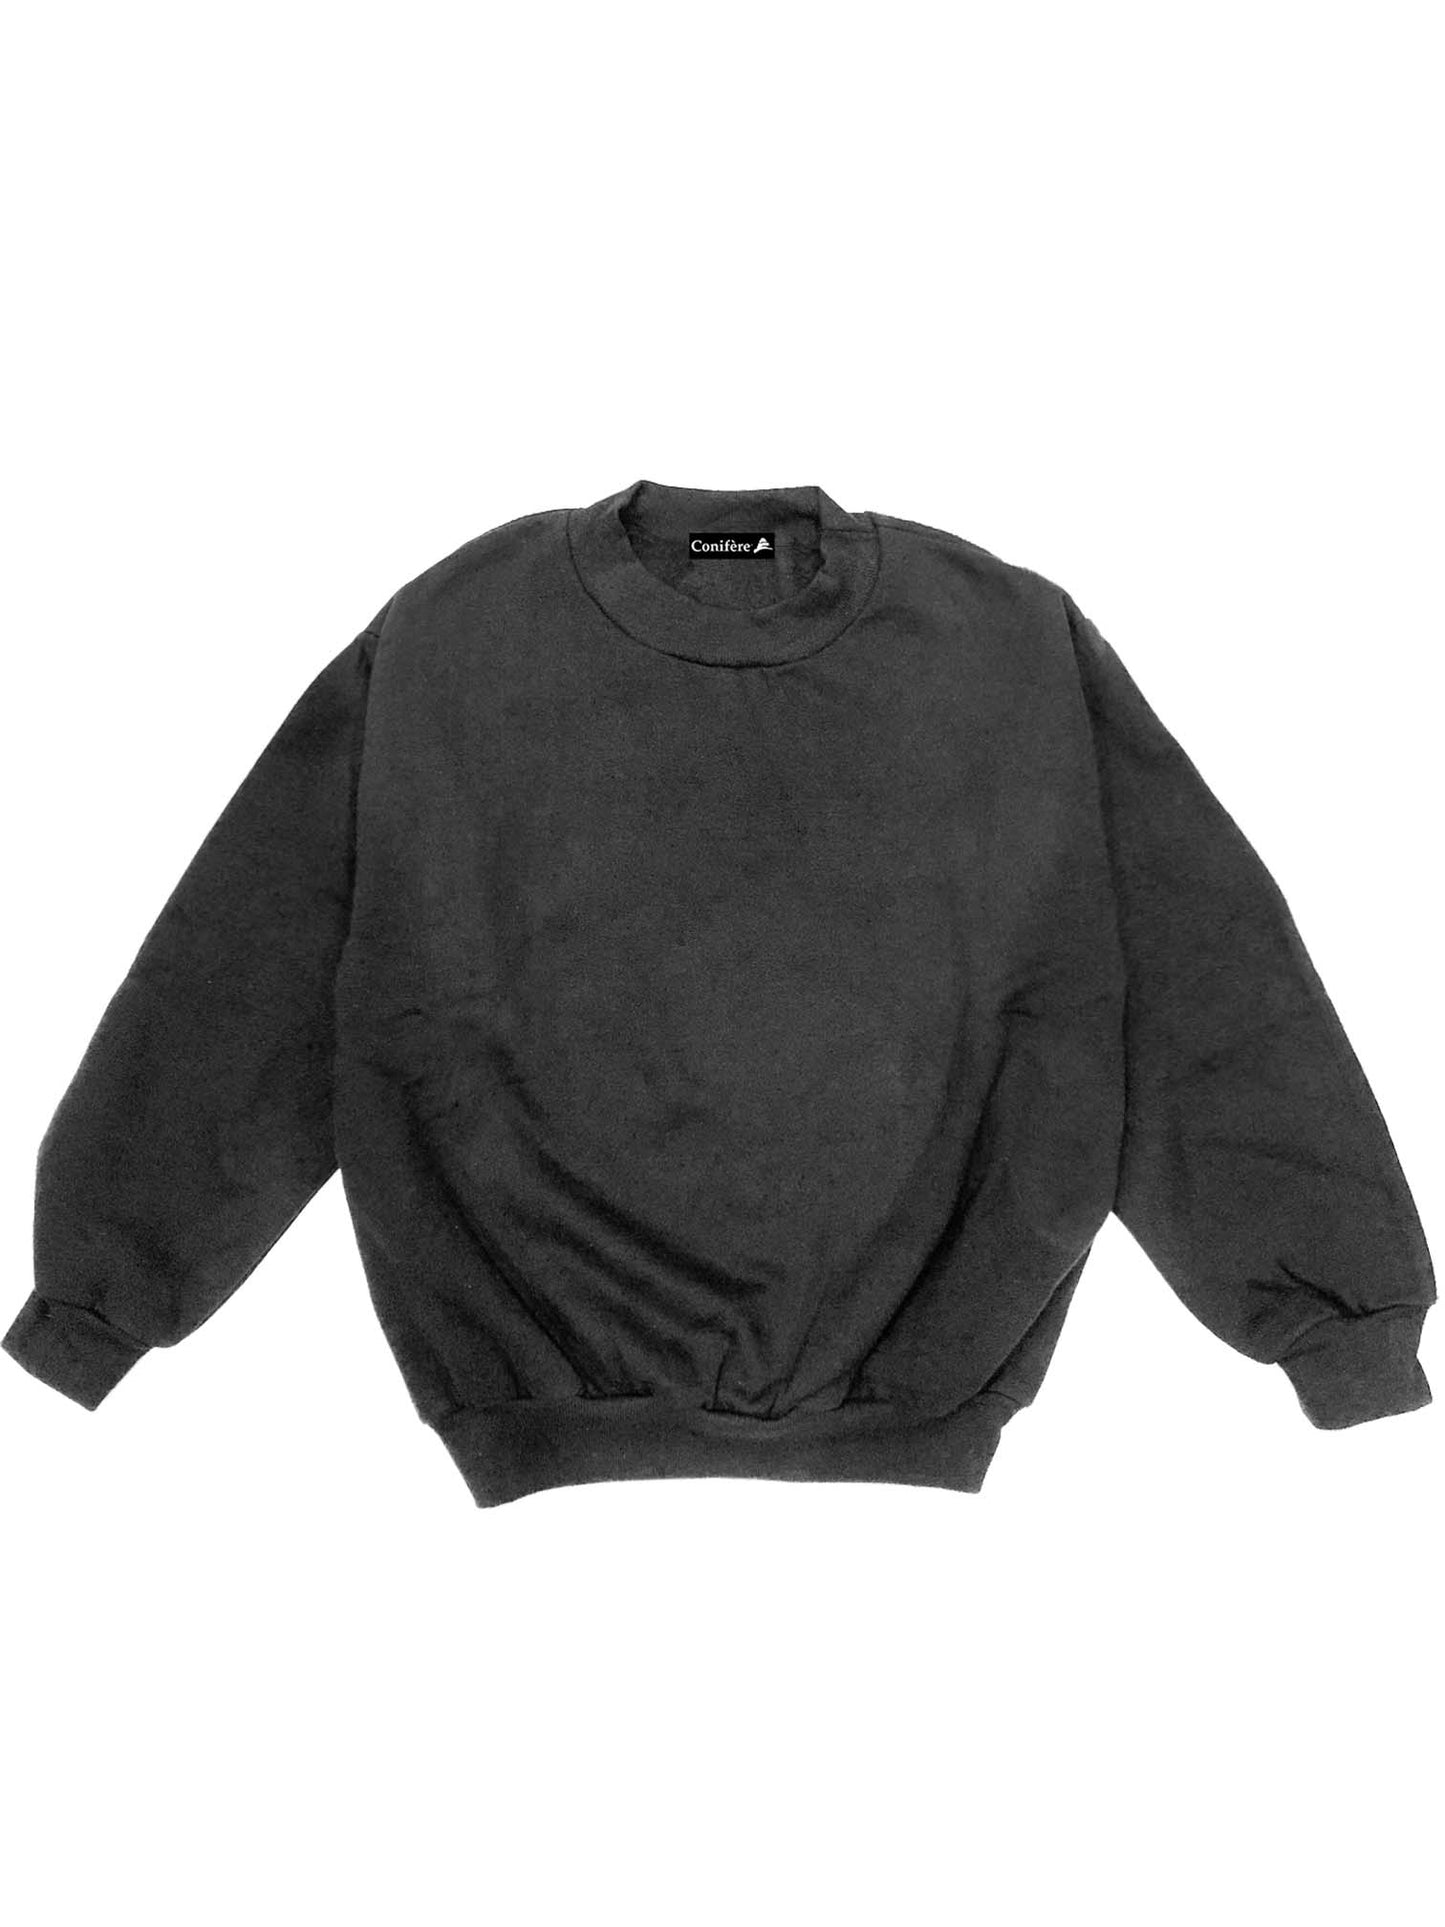 Sweat-shirt noir unisexe pour enfants - P à TG